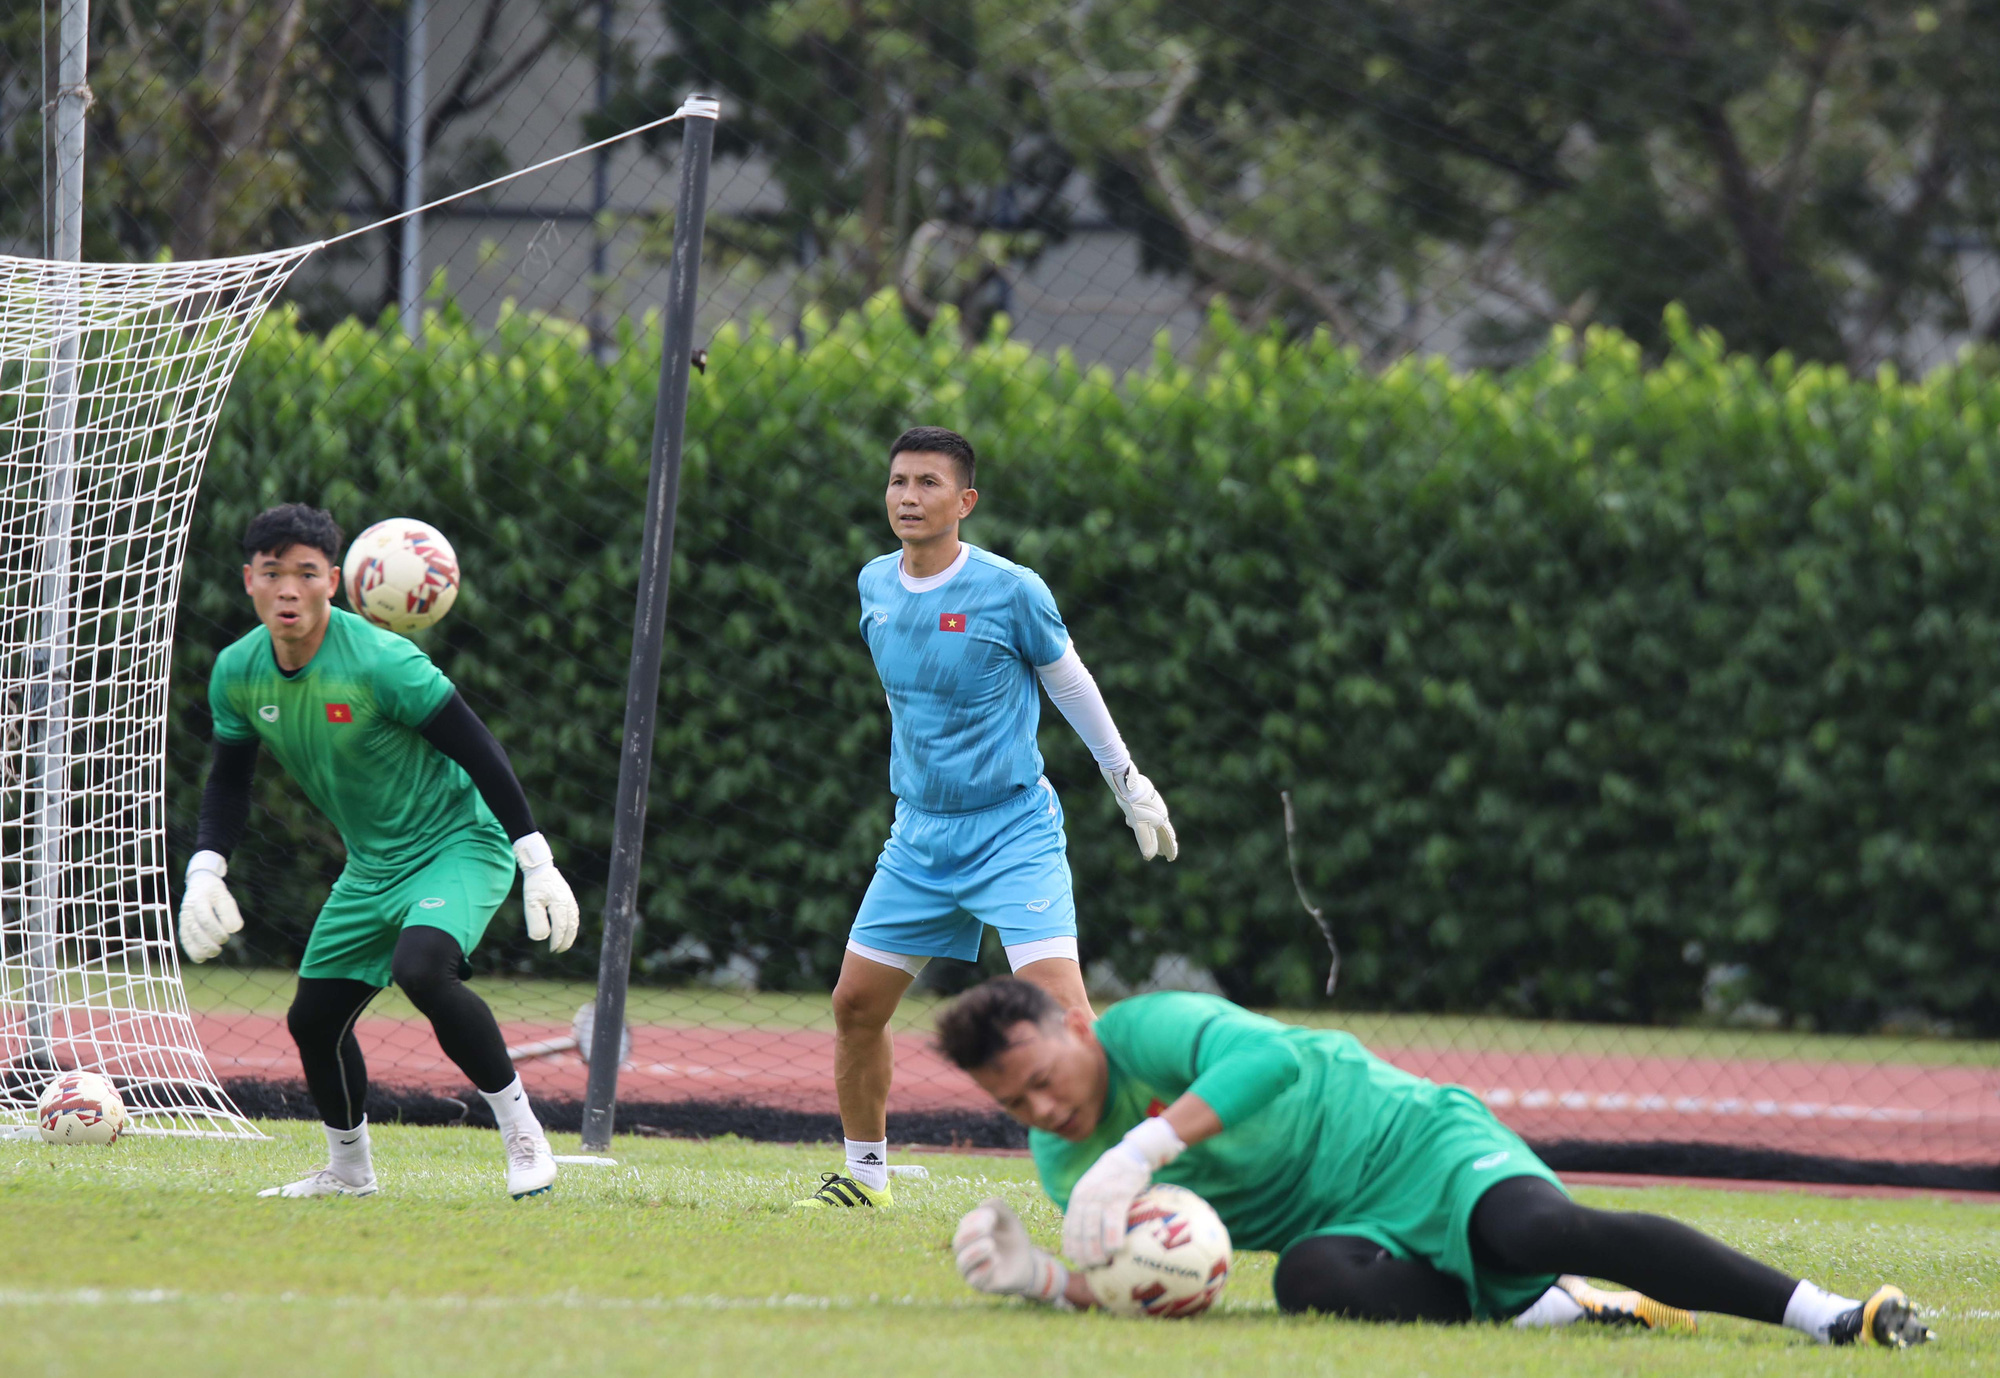 ĐT Việt Nam hoàn tất buổi rèn quân lần cuối, sẵn sàng cho trận ra quân tại AFF Suzuki Cup 2020